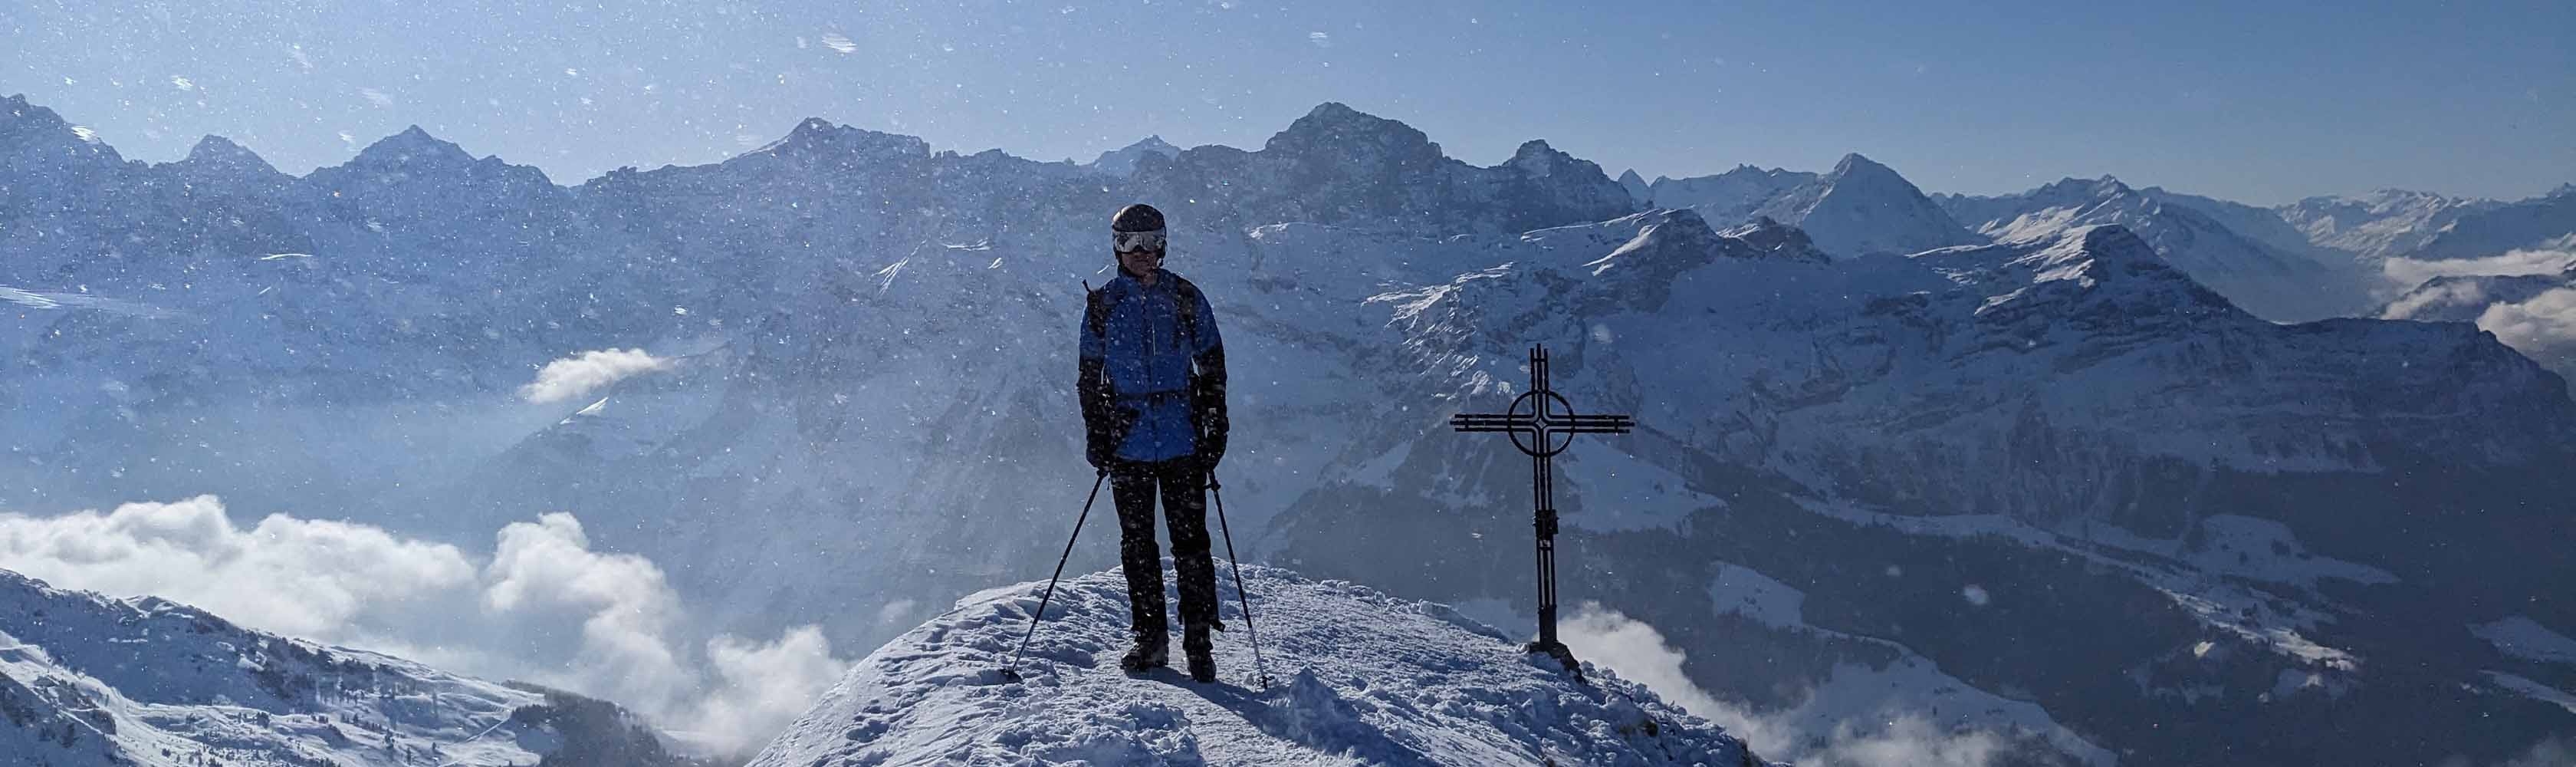 Ein Mitarbeiter der CONCORDIA und Mitglied des CONCORDIA Alpinclubs steht auf einem verschneiten Gipfel nach einer Skitour.